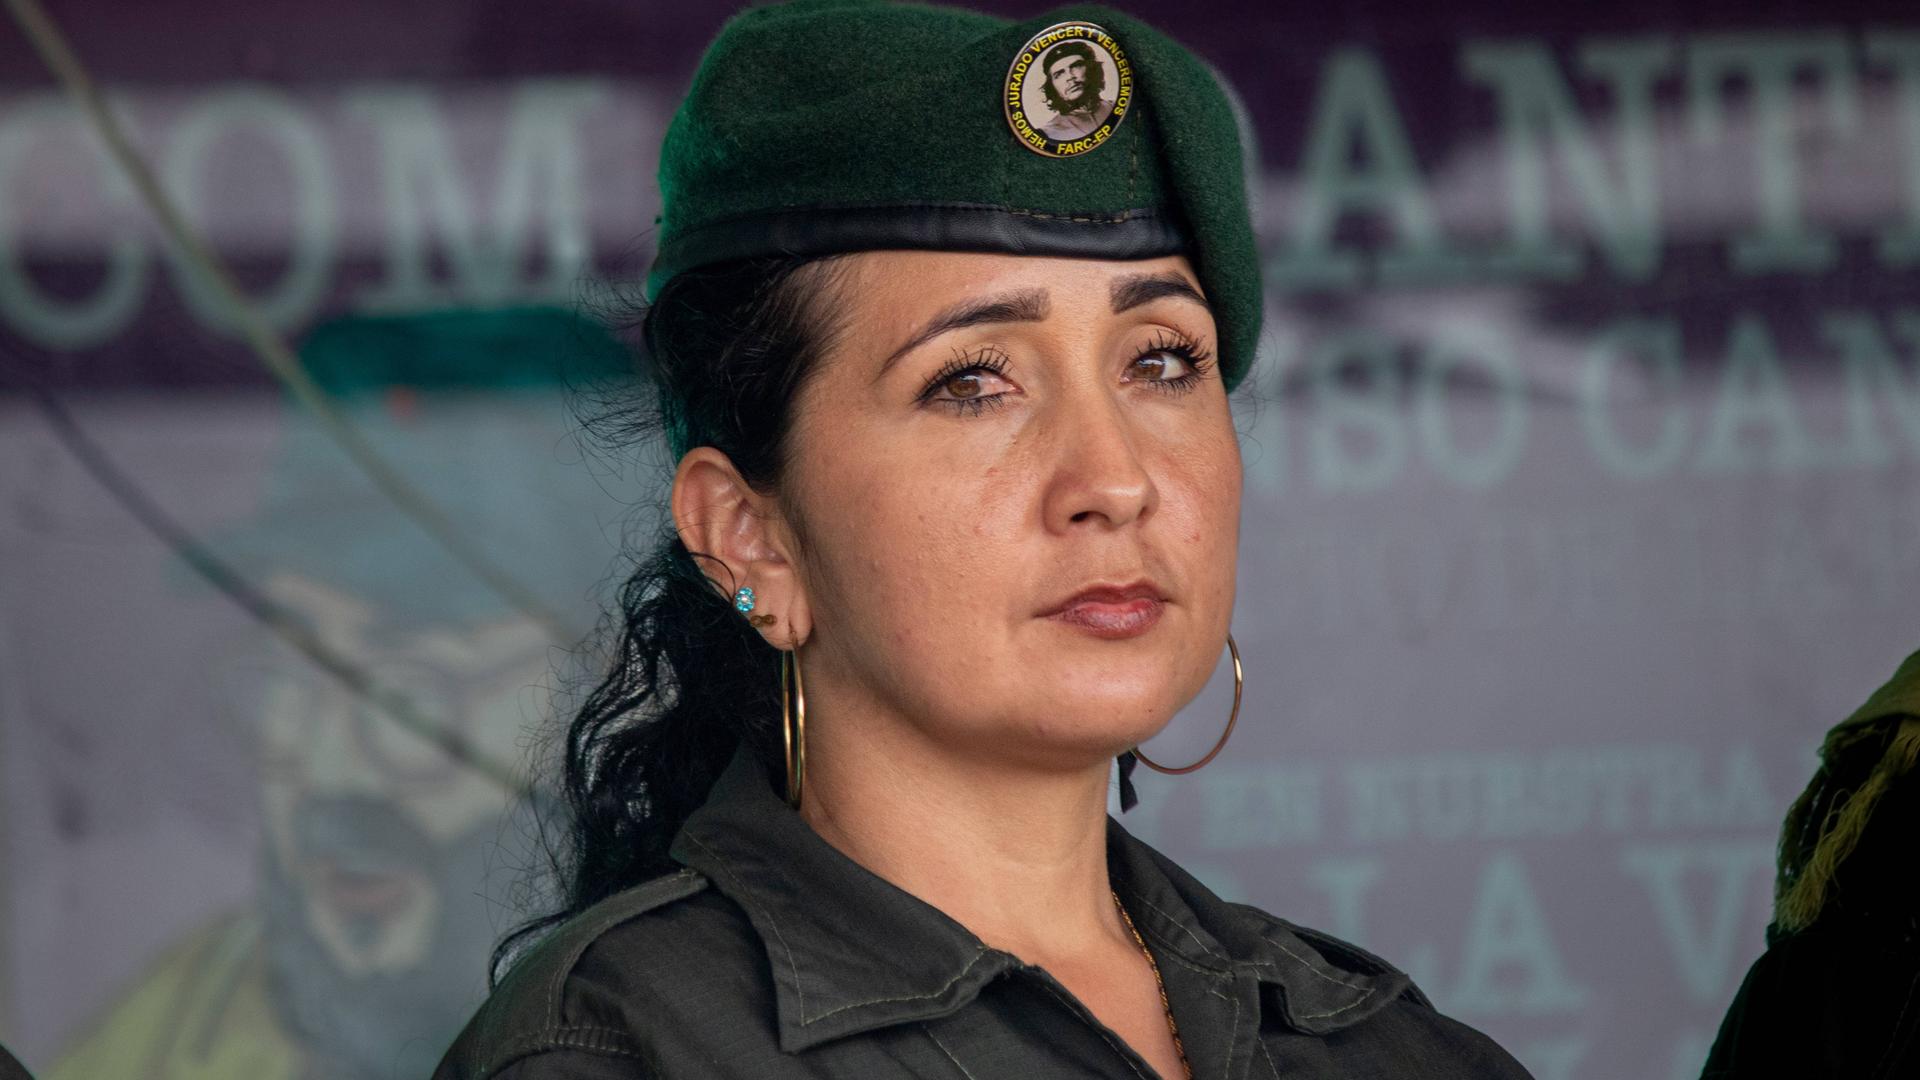 Frau mit schwarzen Haaren, einer Armeemütze mit dem Bild von Che Guevara und einer Armeejacke